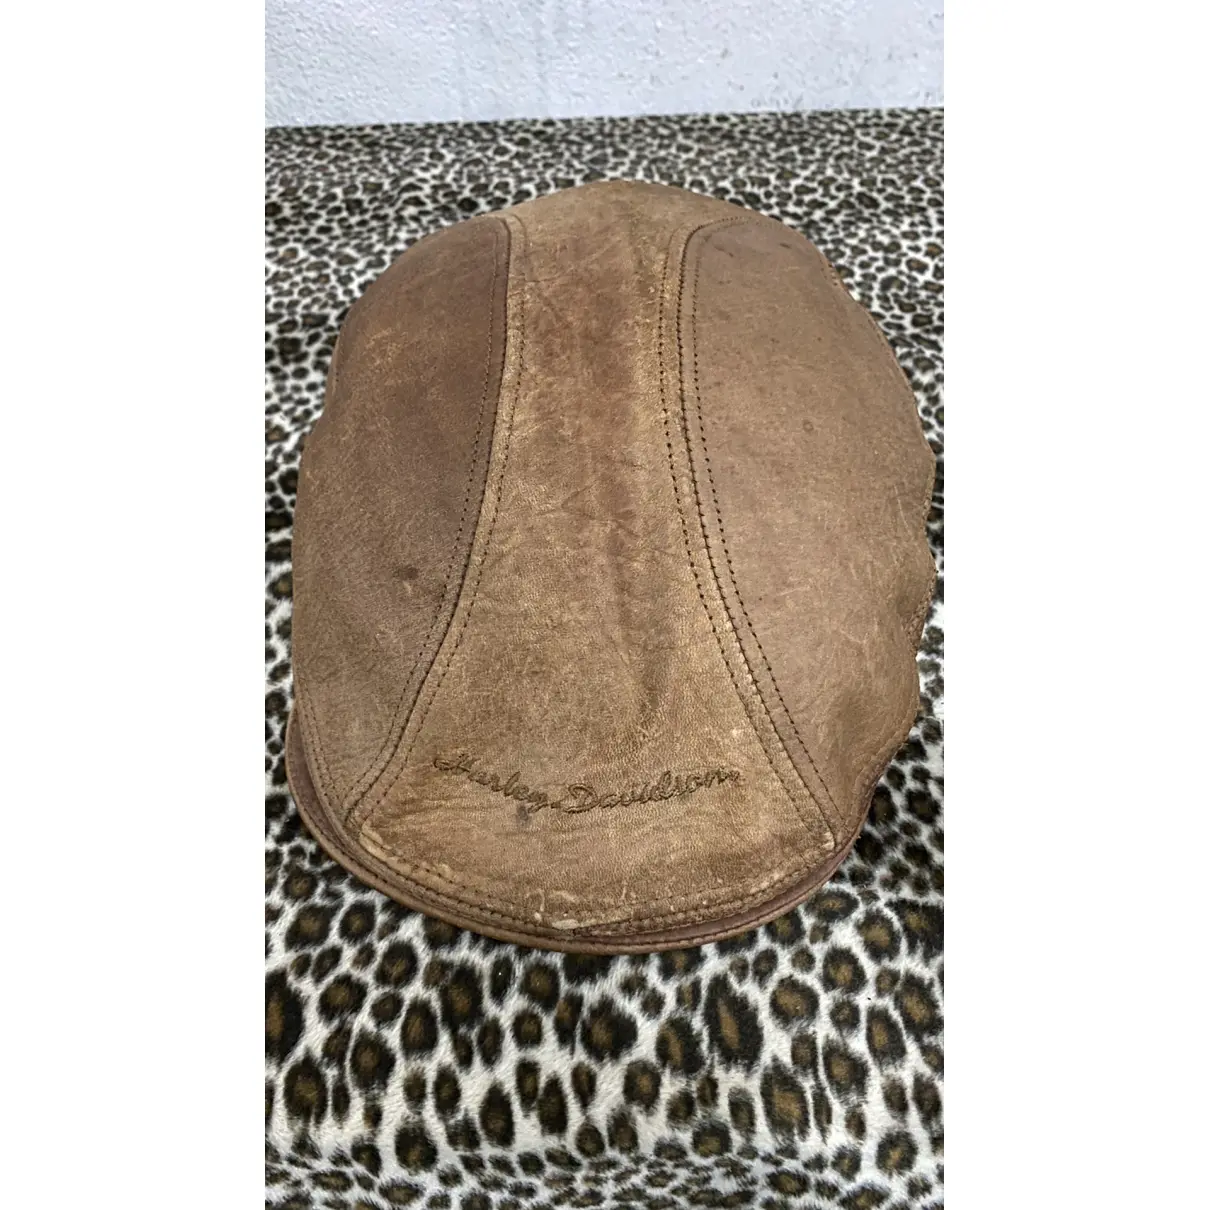 Leather hat HARLEY DAVIDSON - Vintage